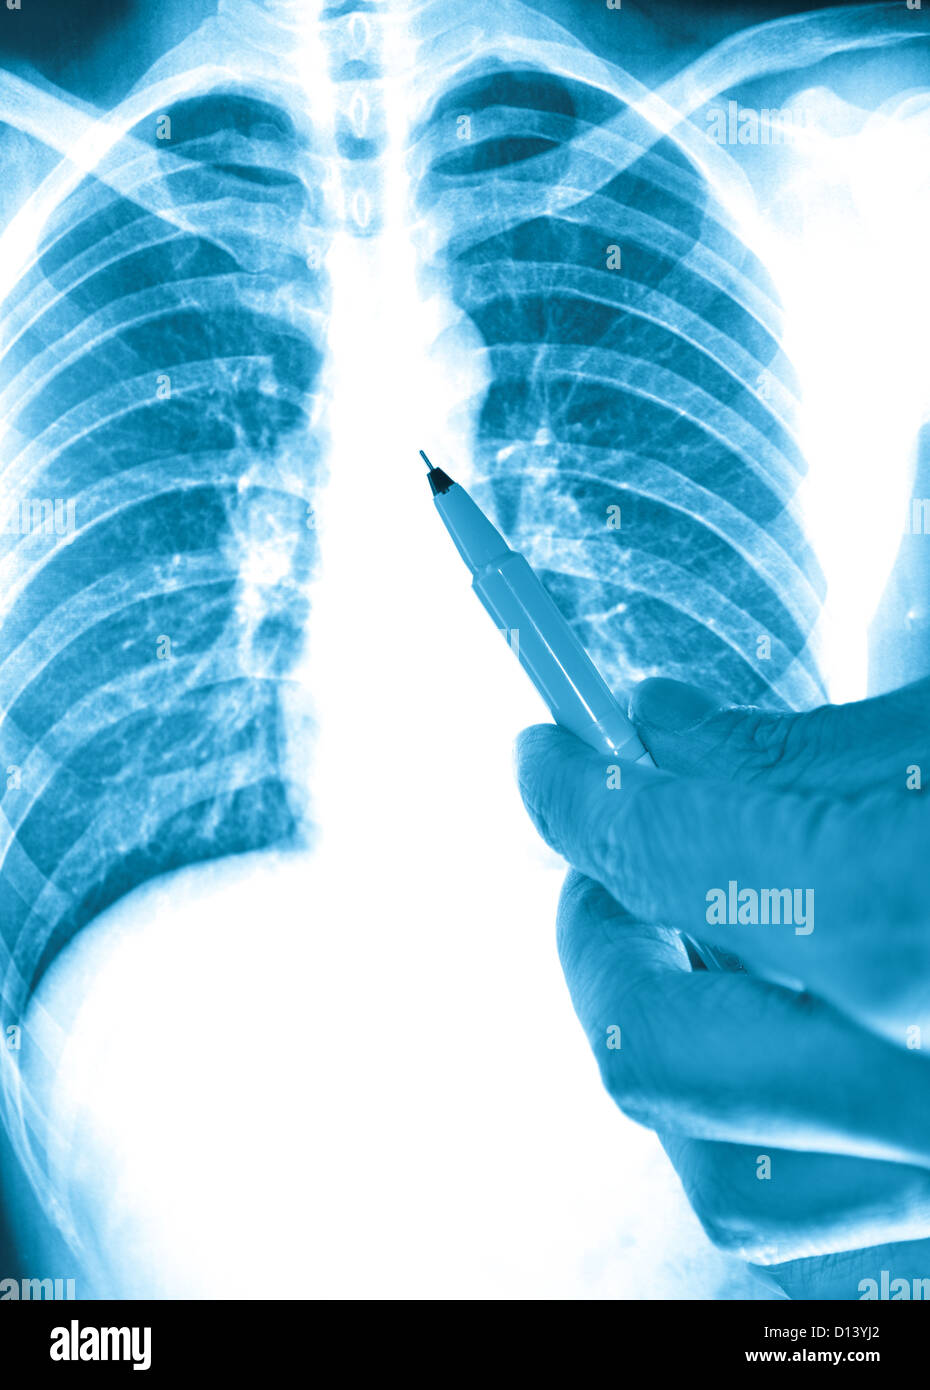 showing x-ray picture of human lumbar vertebra bone Stock Photo